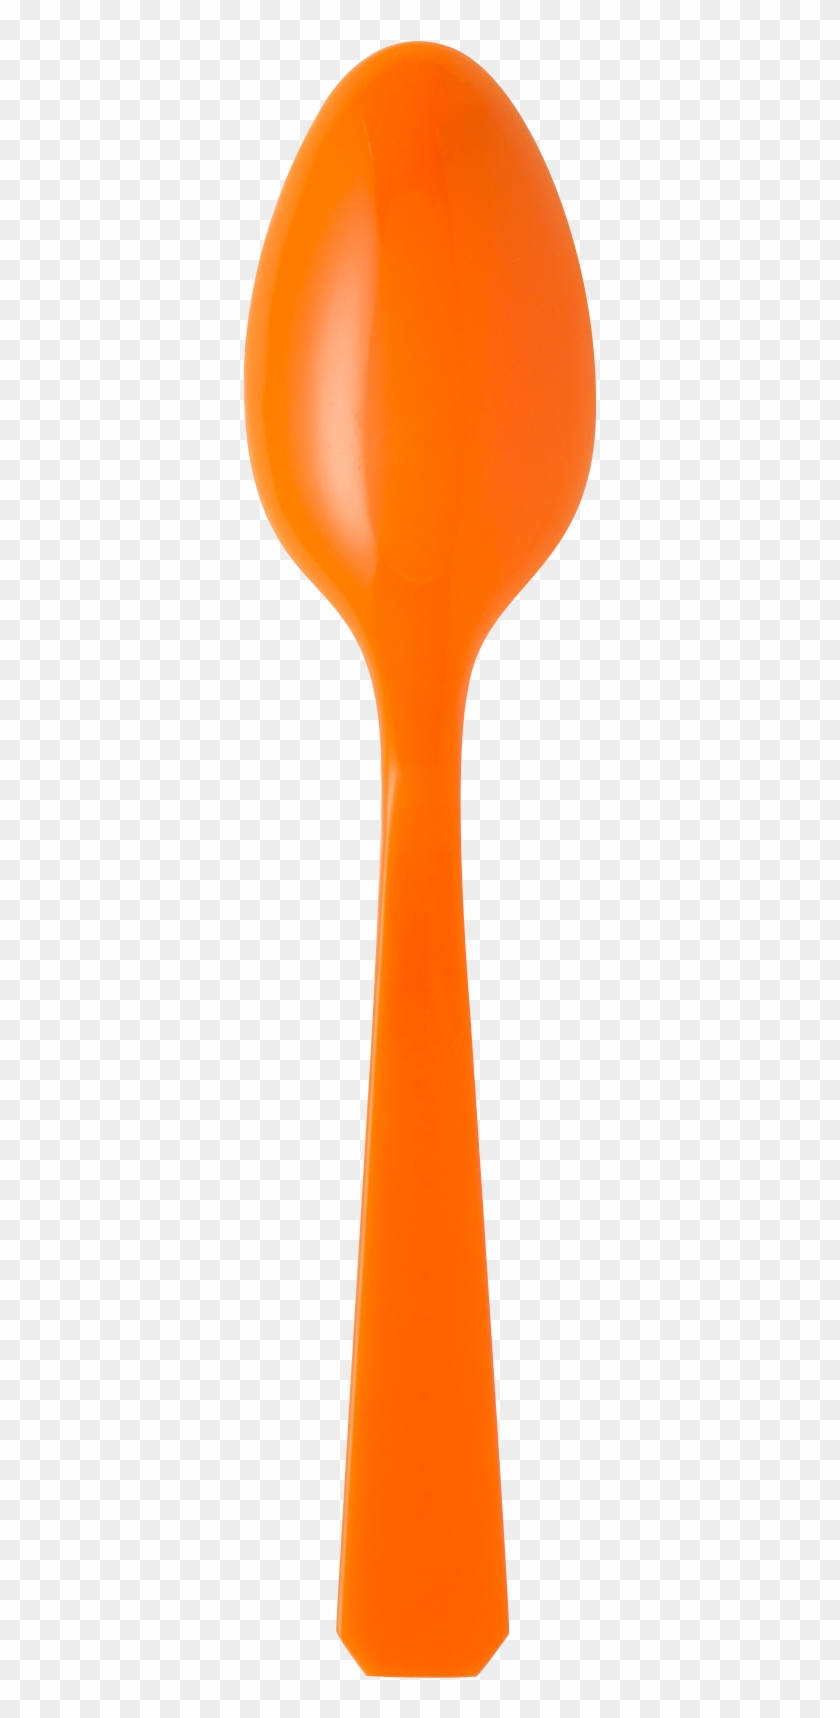 Orange Spoon - Orange Spoon Transparent Clipart #4525222